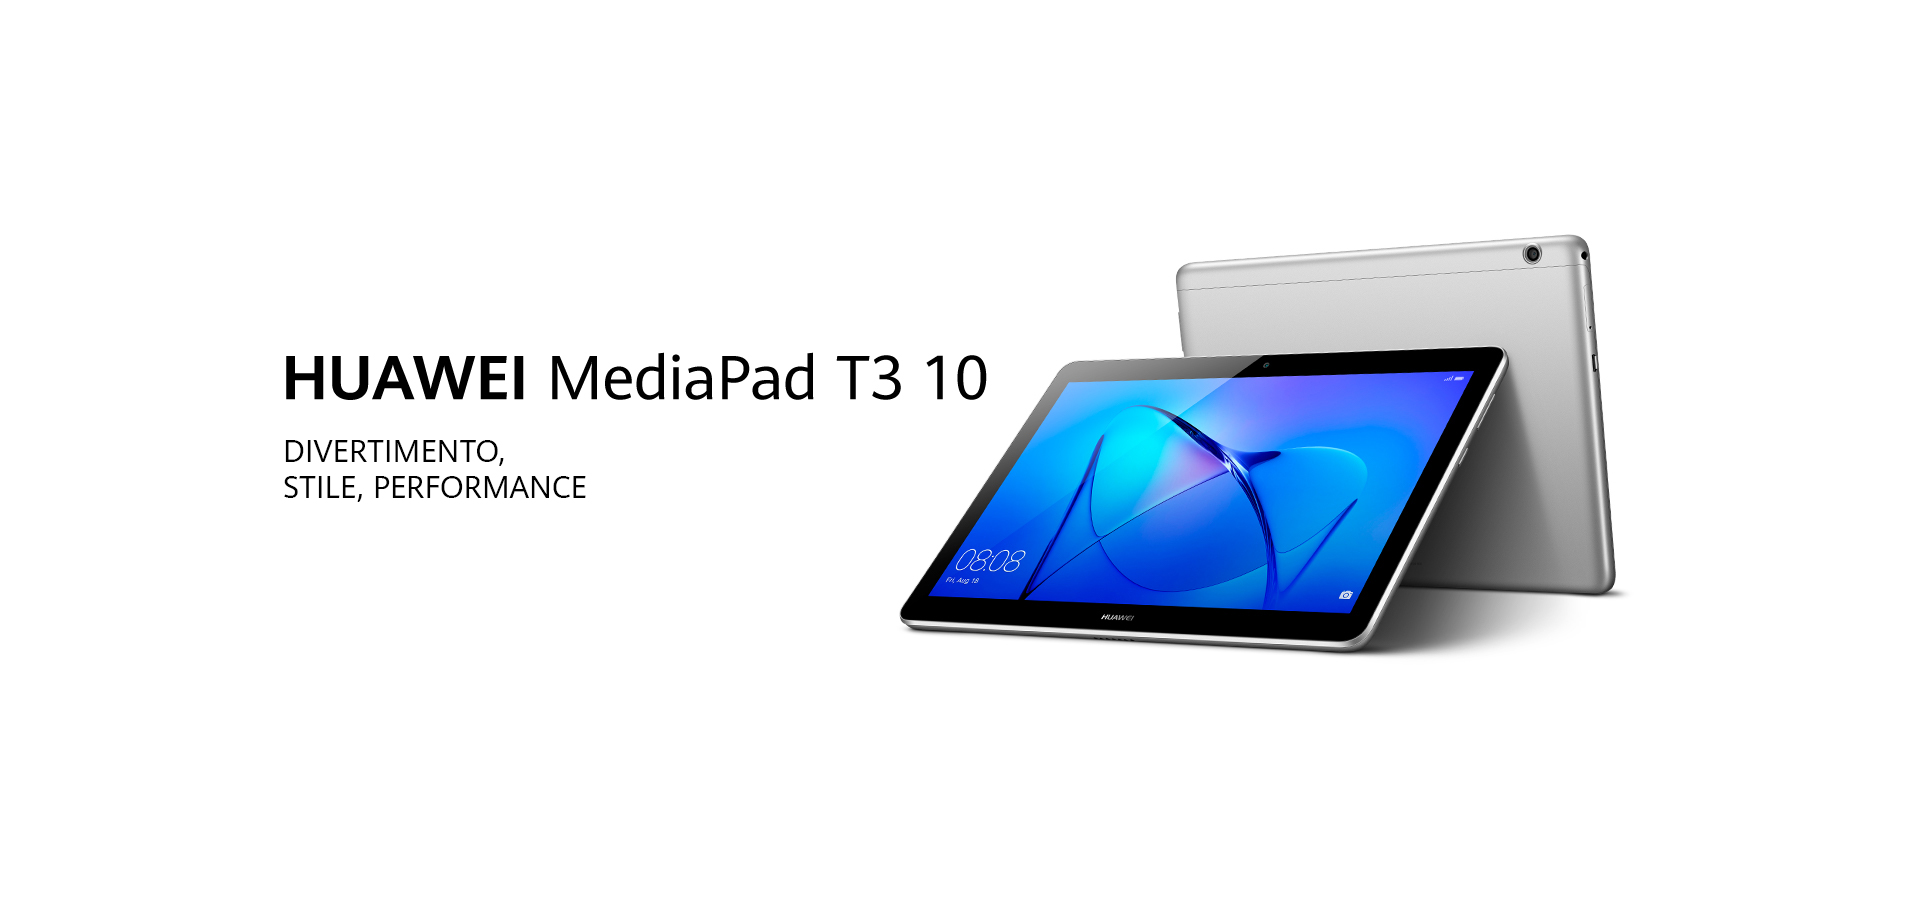 HUAWEI MediaPad T3 10 | PC & Tablet | HUAWEI Italia